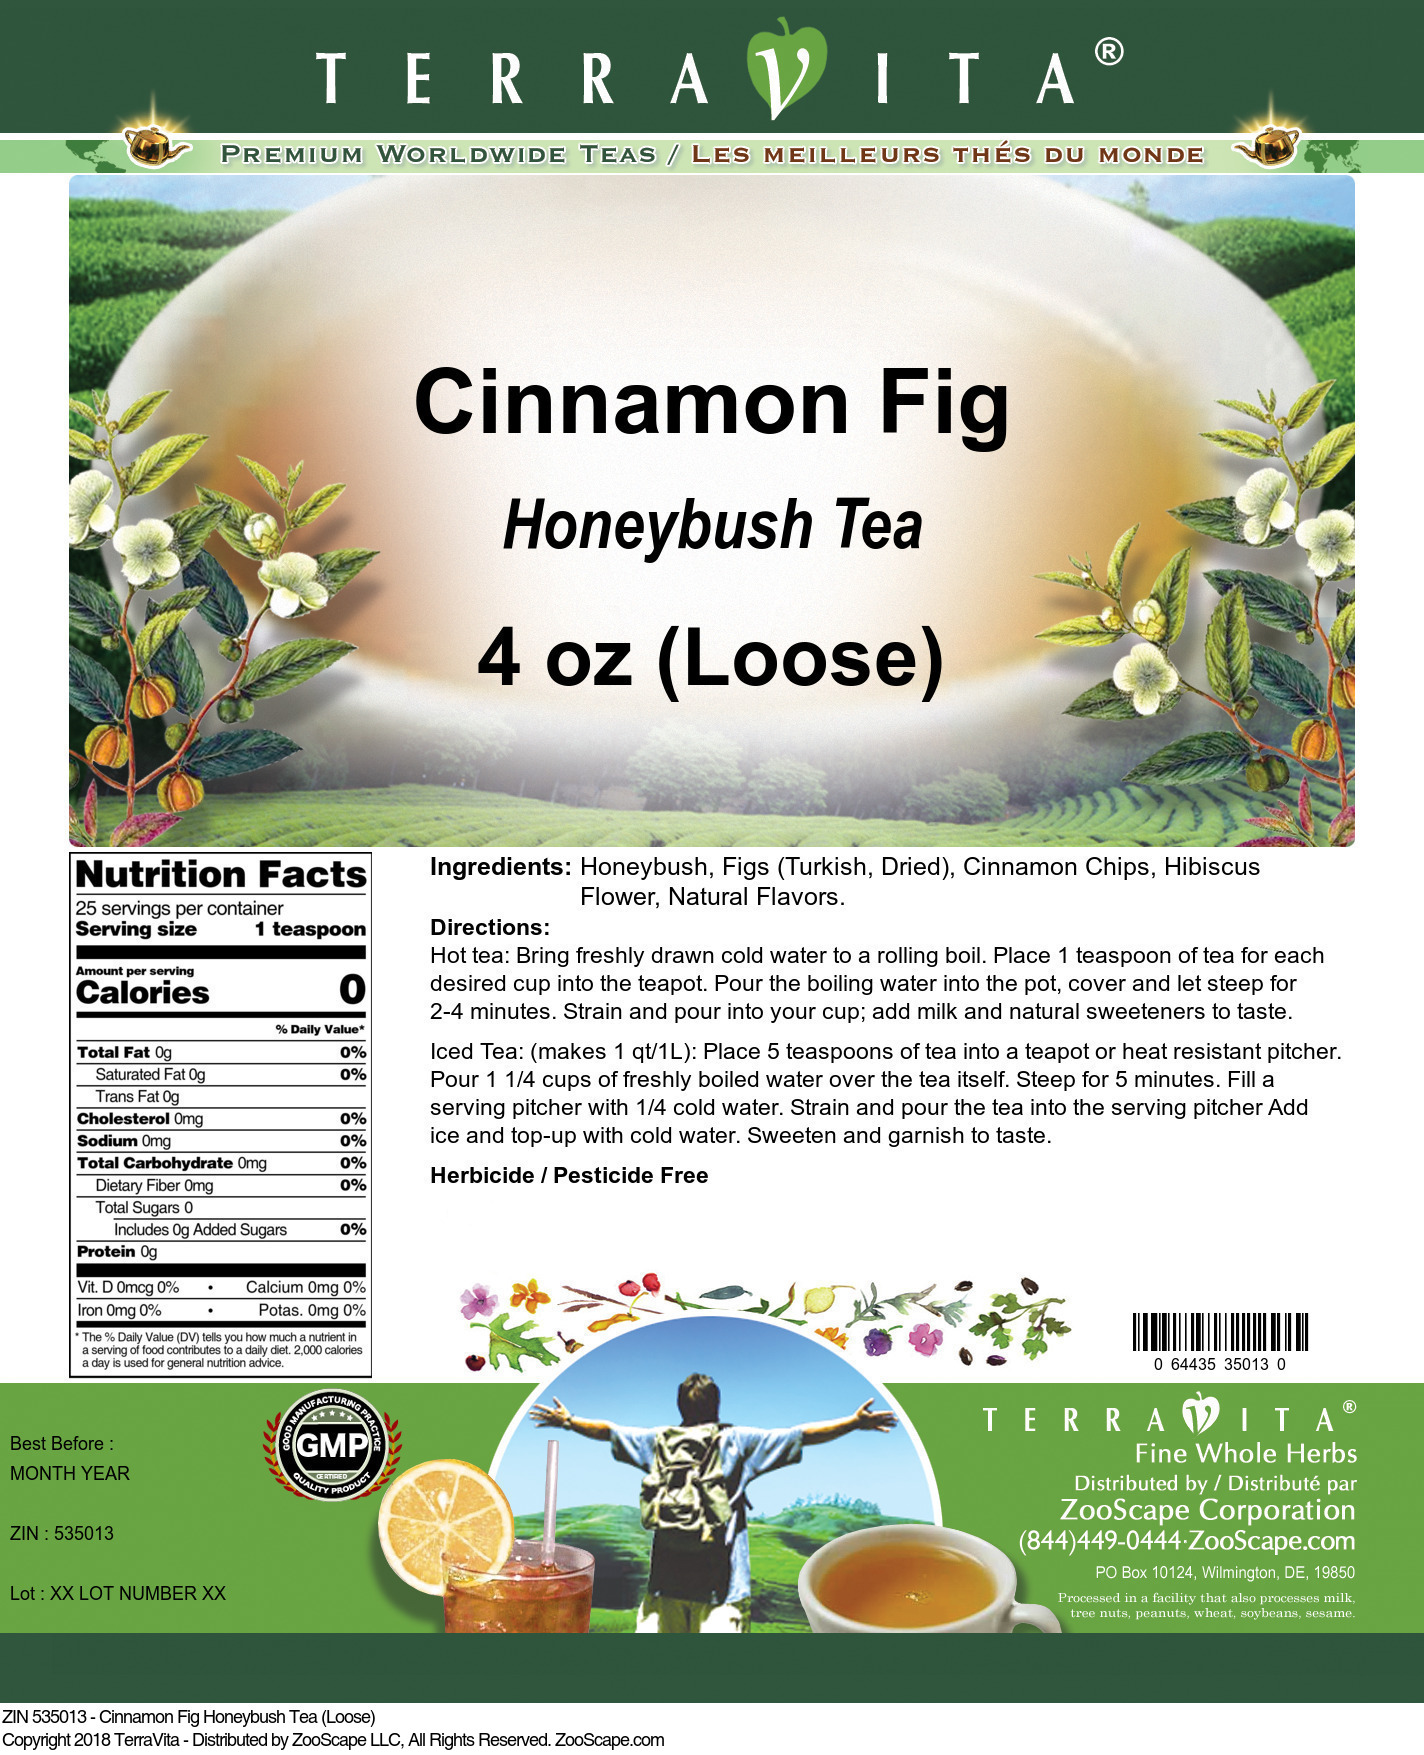 Cinnamon Fig Honeybush Tea (Loose) - Label